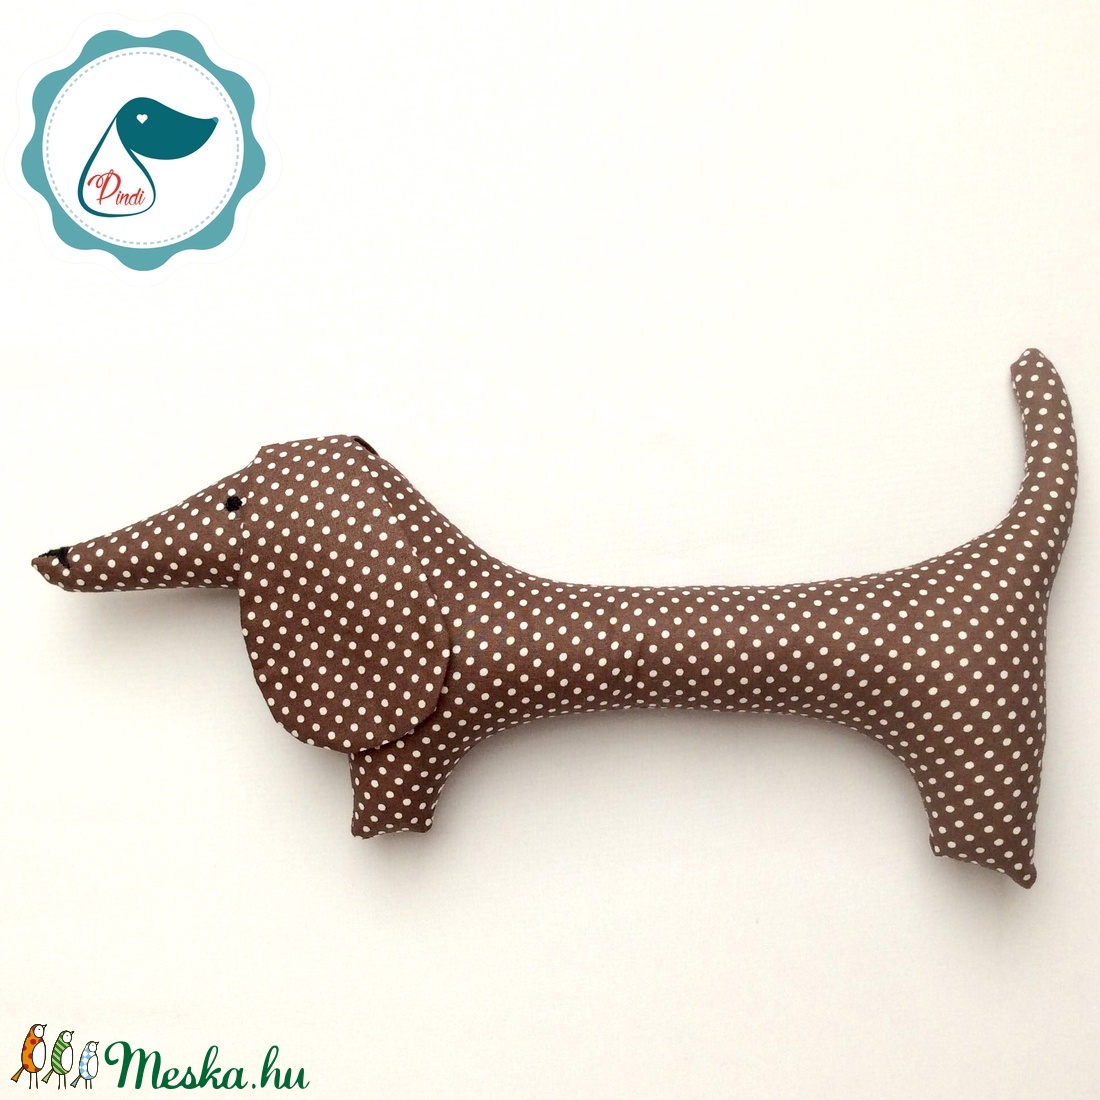 Tacskó - csoki barna  pöttyös egyedi tervezésű kézműves játék - textiljáték - tacsi kutya - gyerek játék - játék & sport - plüssállat & játékfigura - kutya - Meska.hu